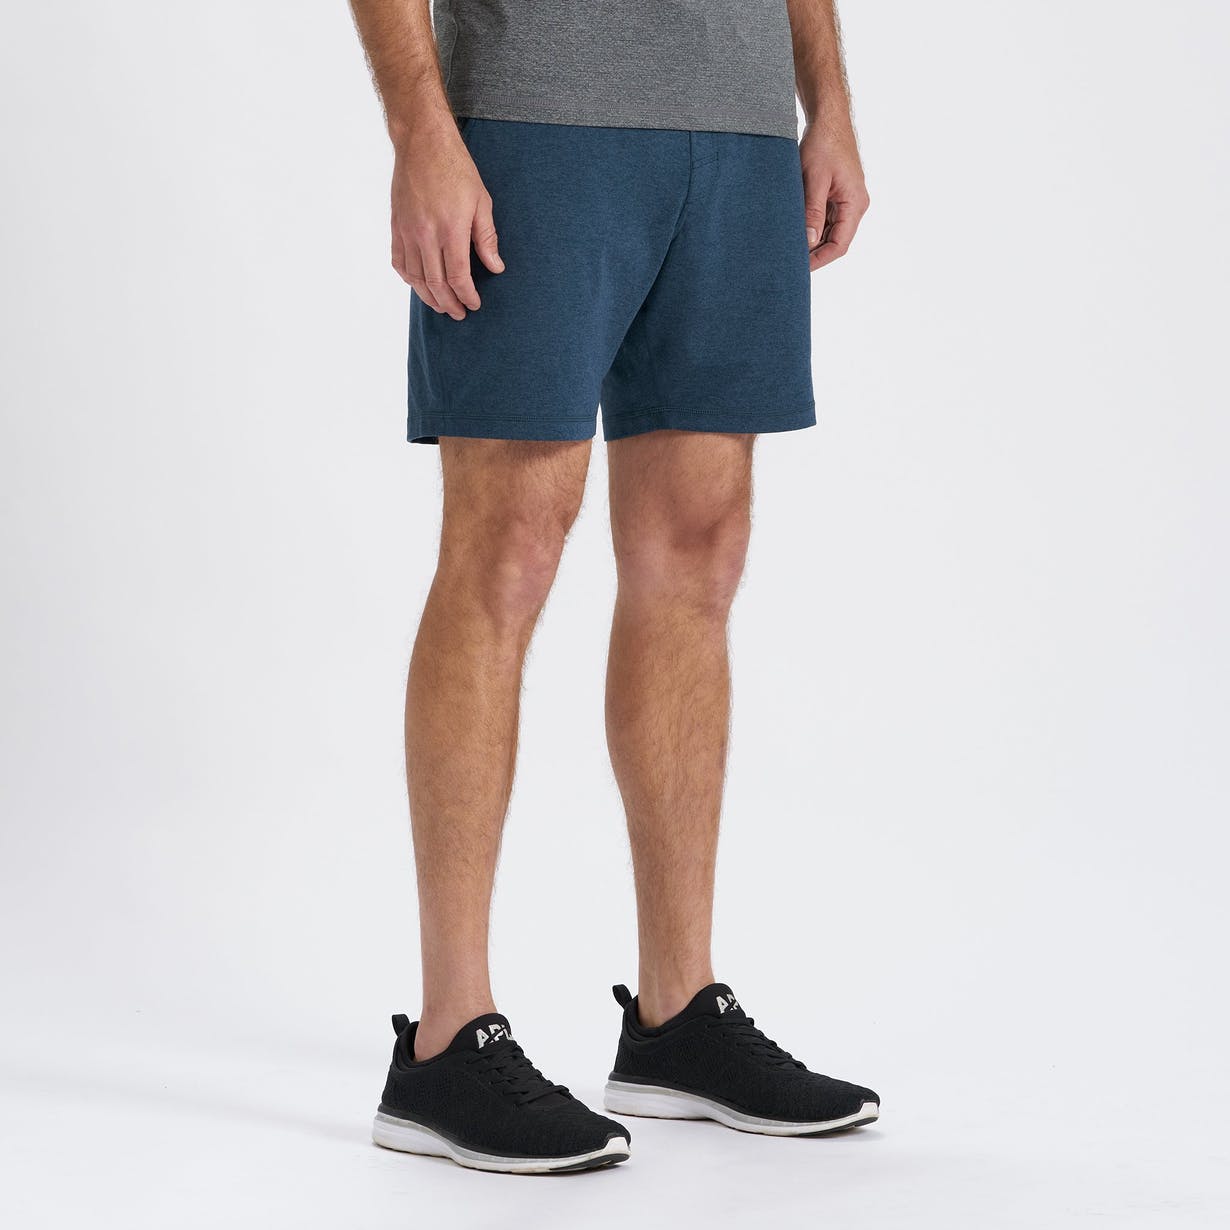 Men wearing Vuori Shorts